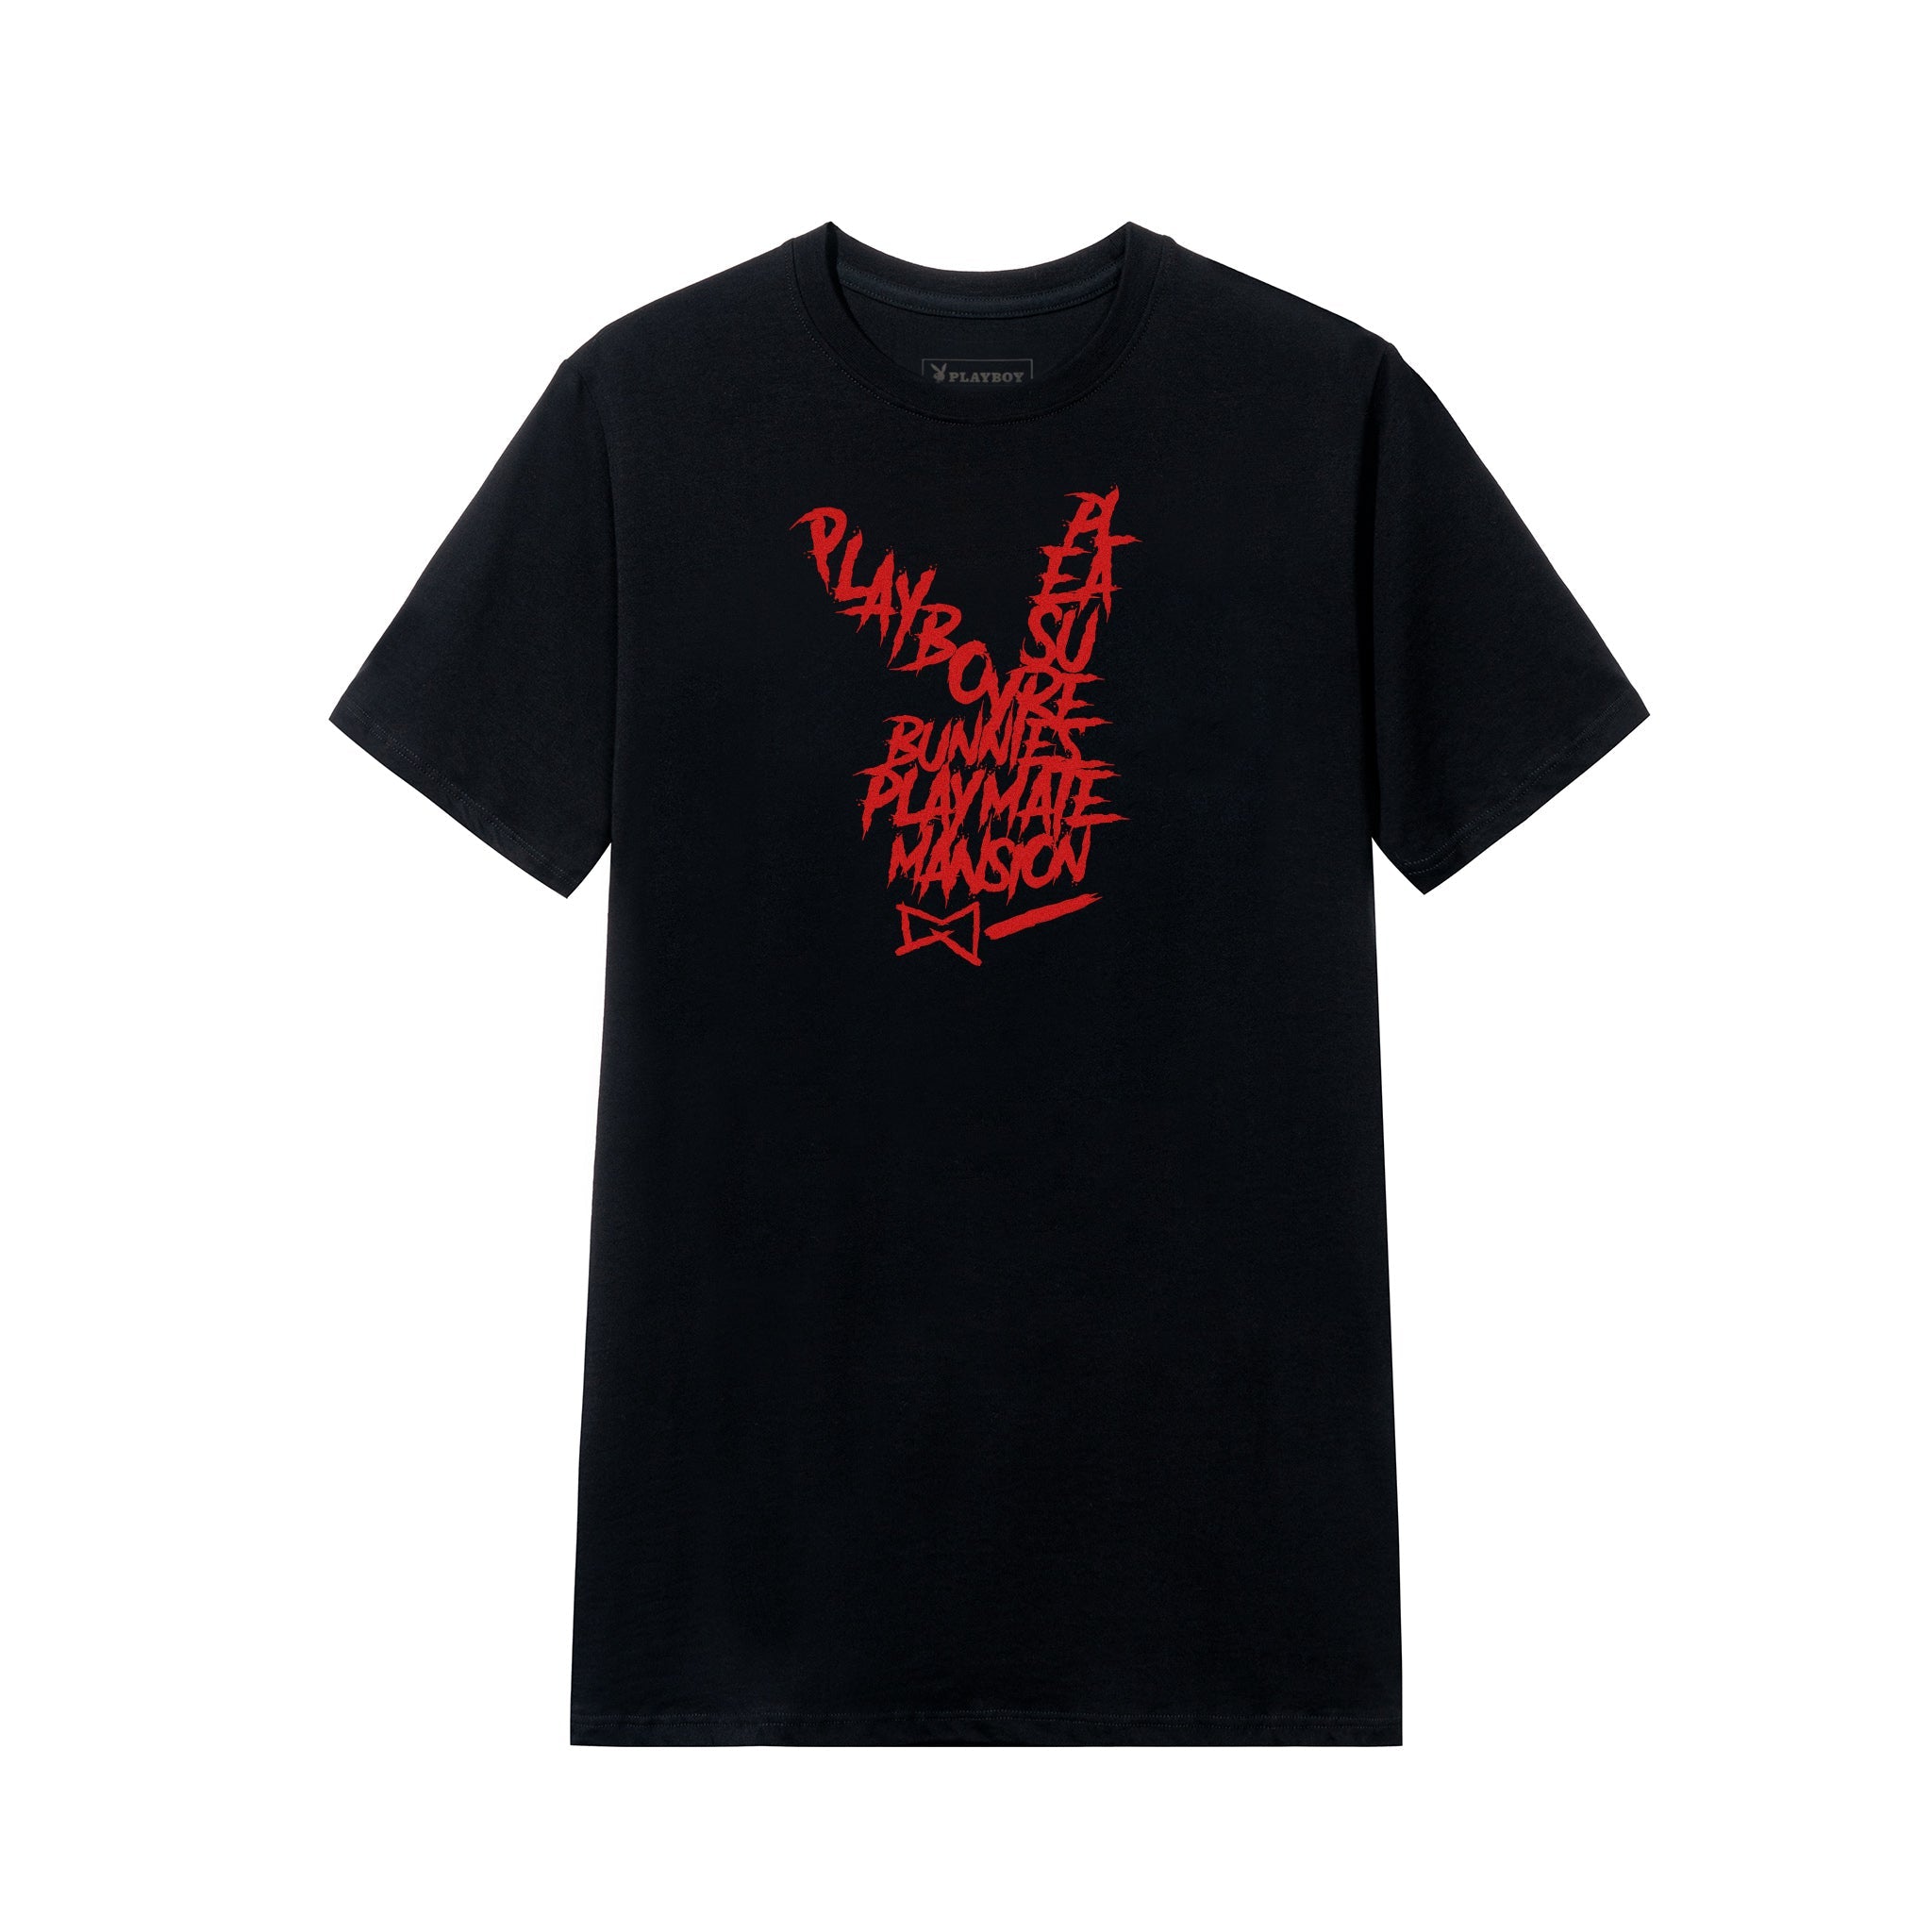 Graffiti Rabbit Head T-Shirt, Black